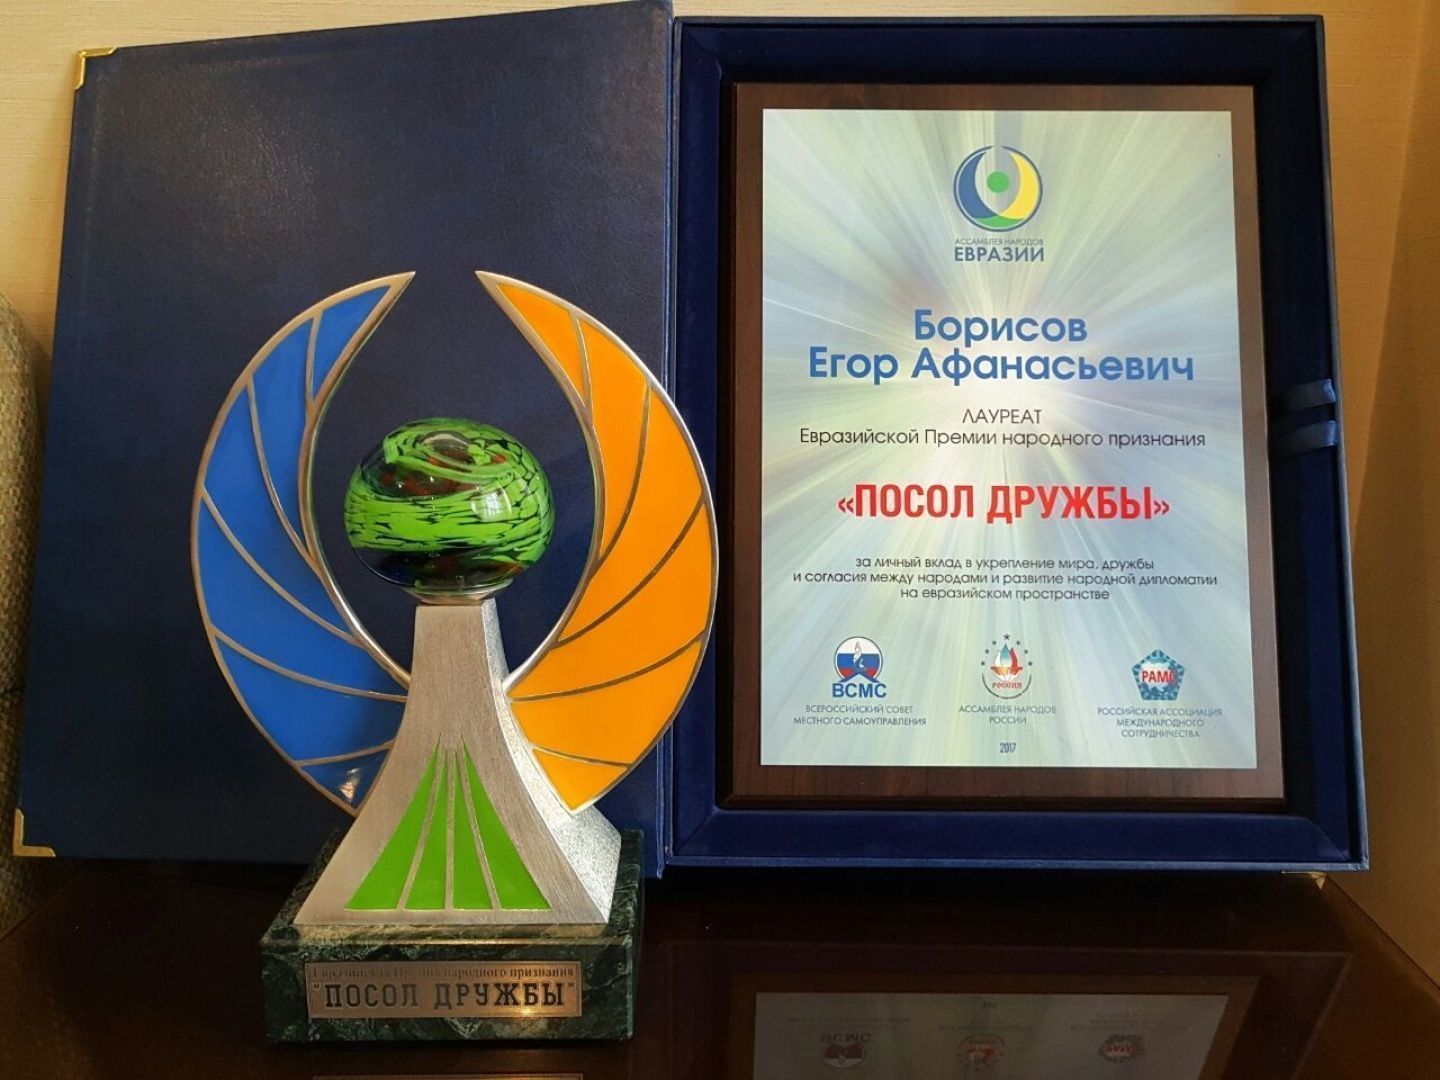 Михаил Гуляев: «Ассамблея народов Евразии нацелена и на развитие спортивного сотрудничества между народами»